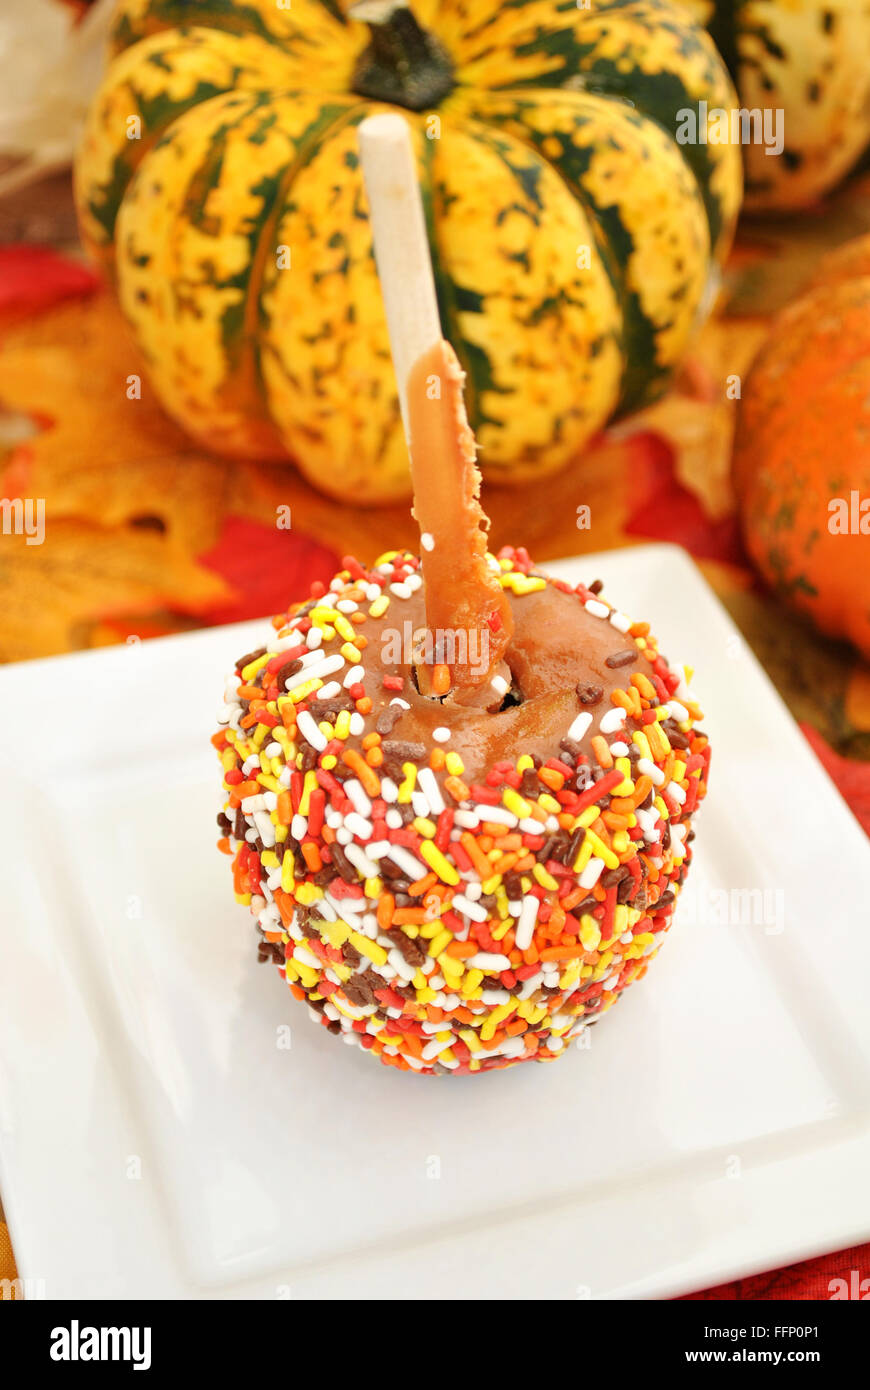 Herbst festliche Candy Apple auf einem weißen Teller Stockfoto